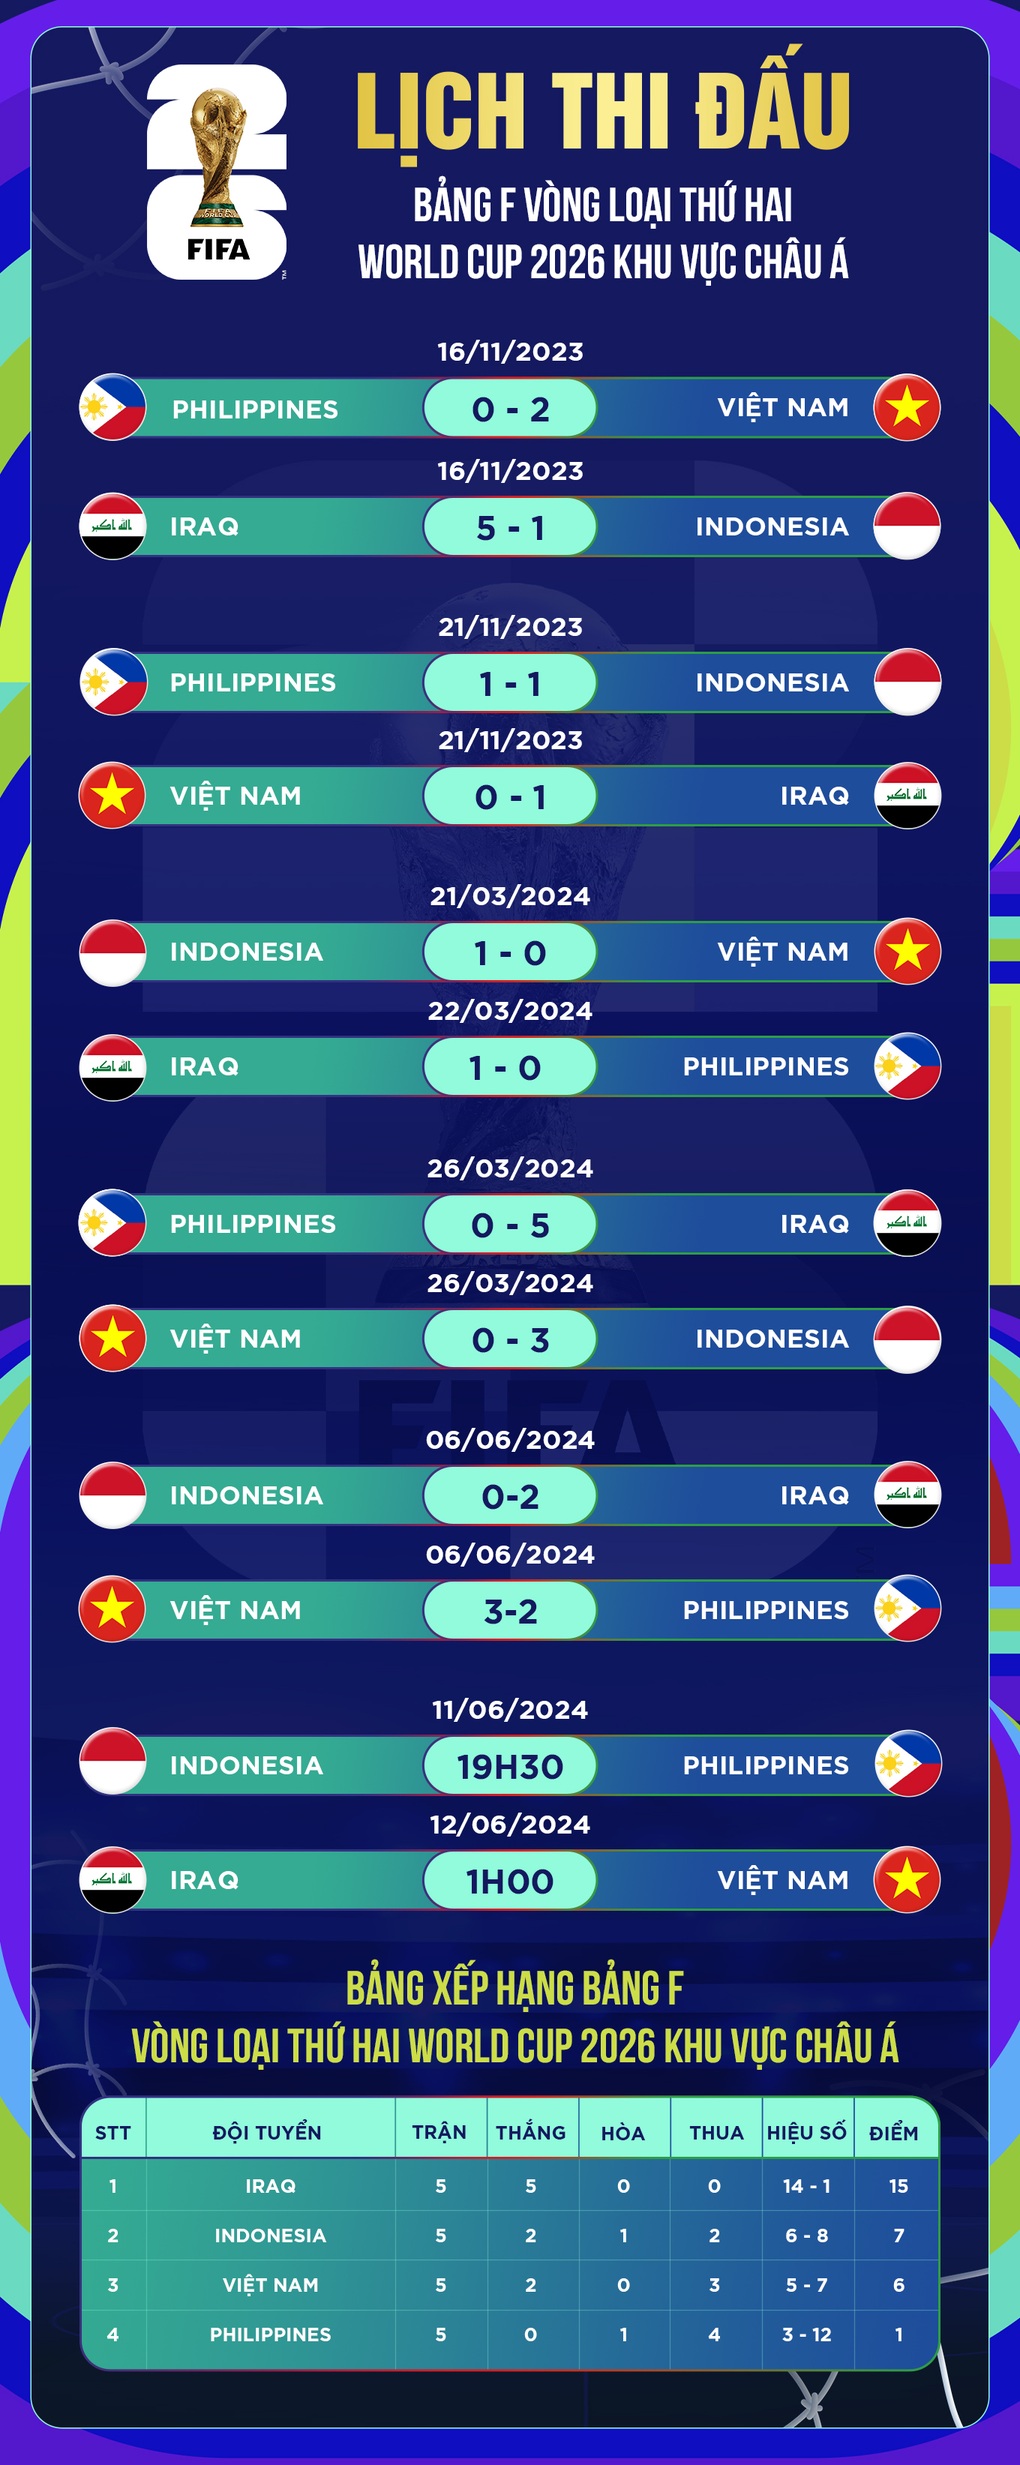 Lộ diện trọng tài điều khiển trận đấu của tuyển Việt Nam gặp Iraq - 2